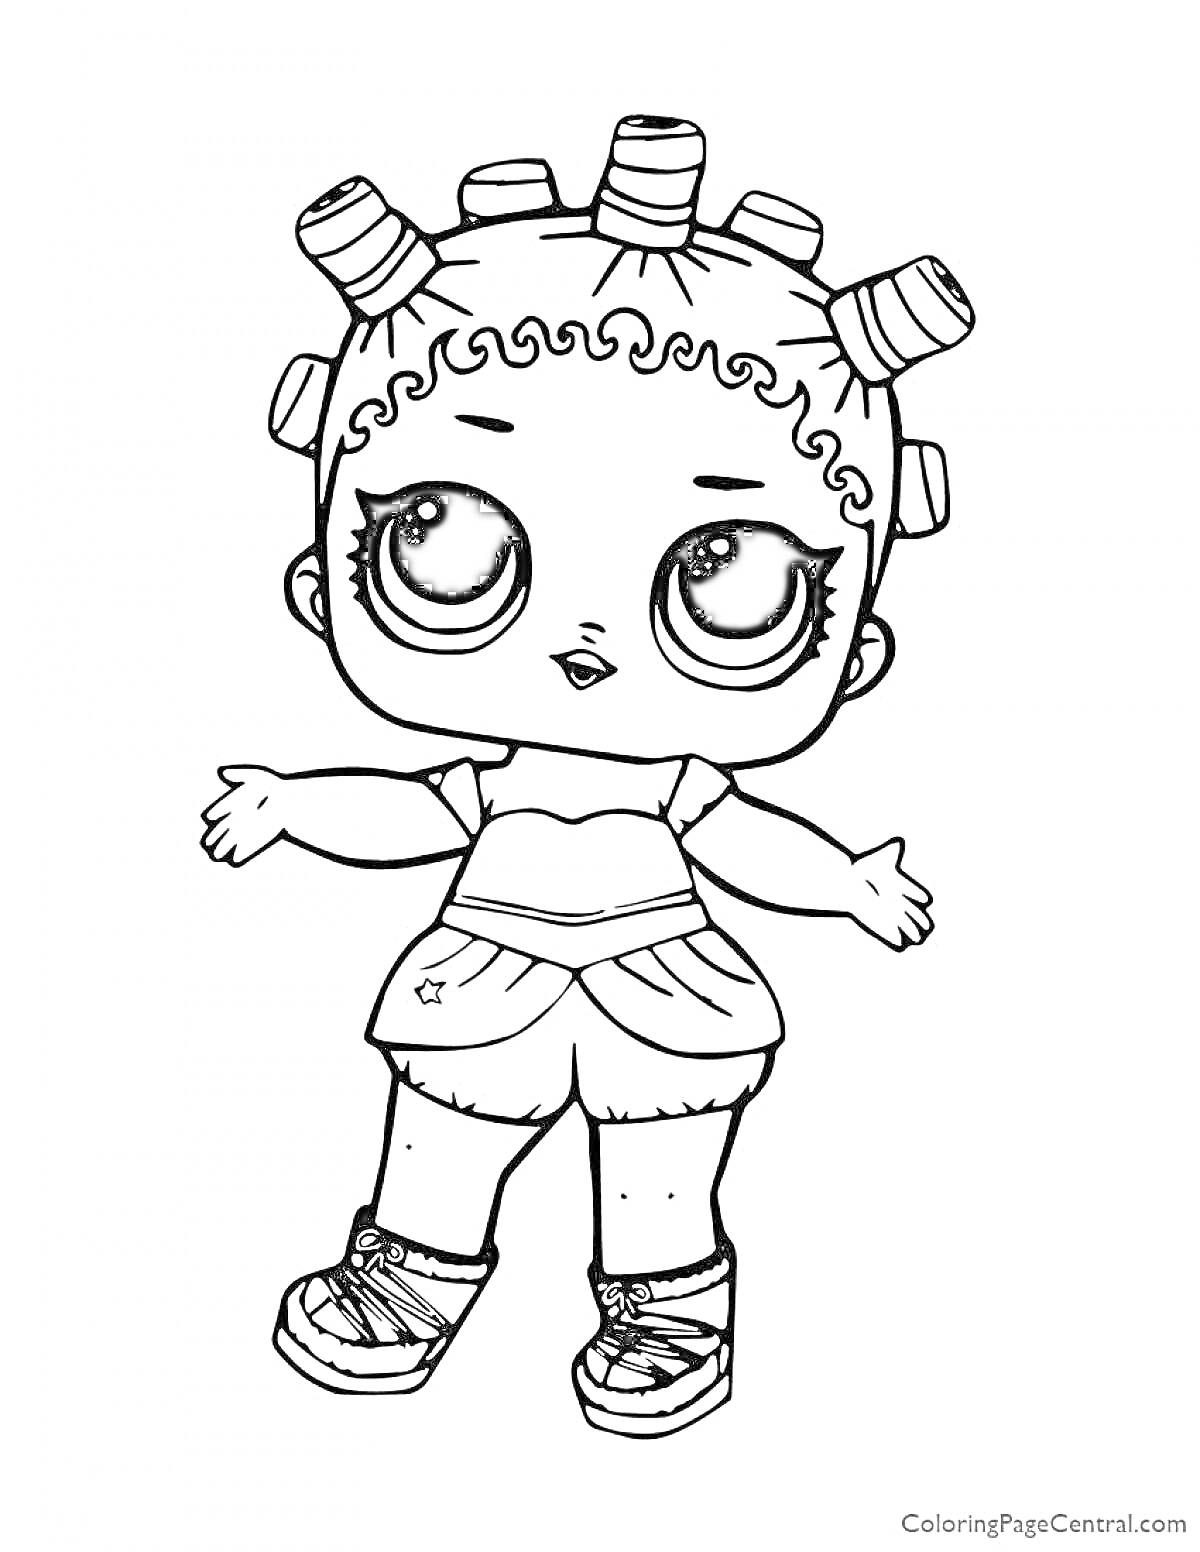 Раскраска Кукла ЛОЛ с завитками на голове, в юбке и майке, с открытыми руками